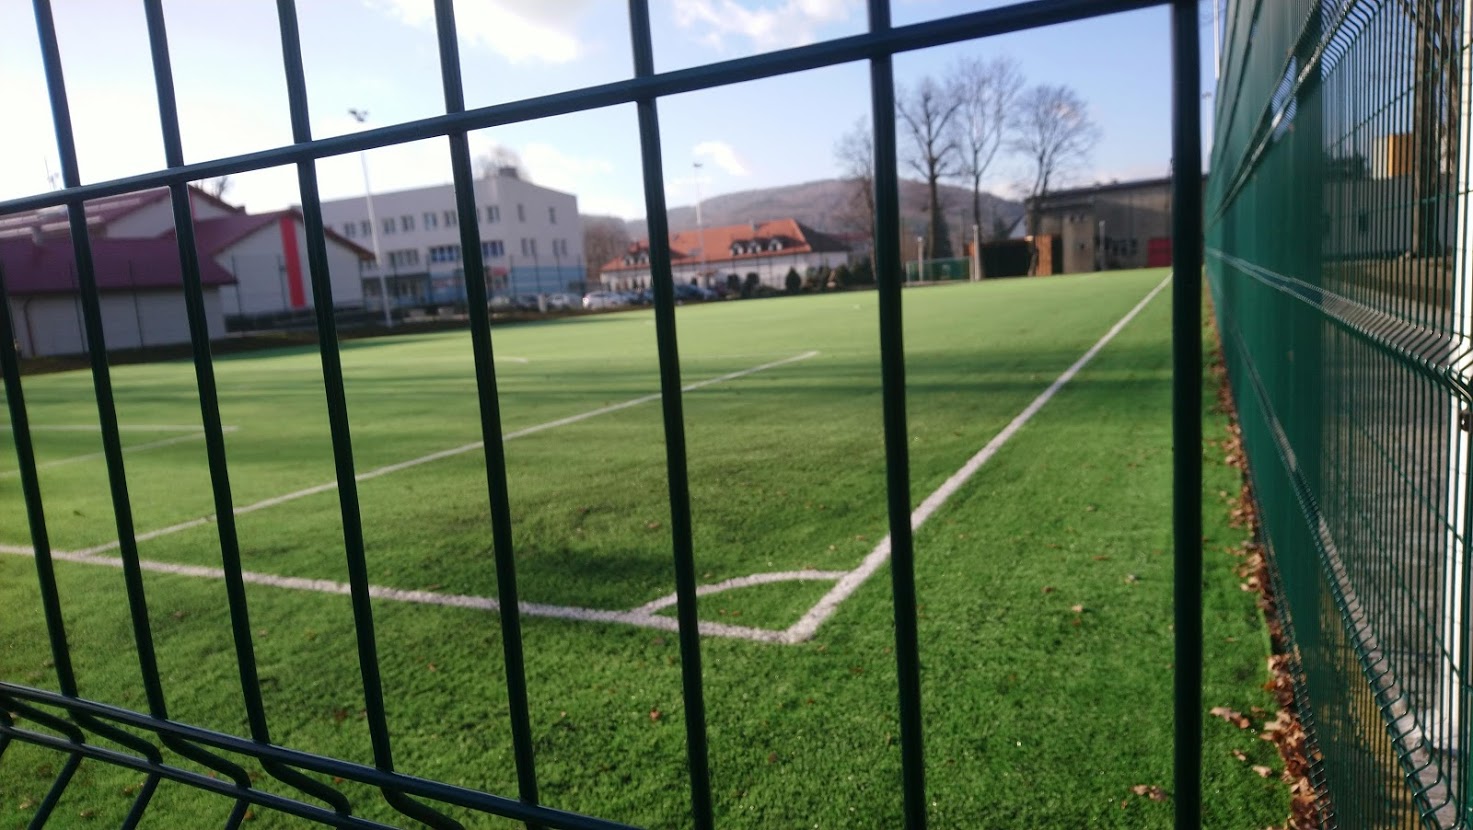 Fotografia przedstawia boisko piłkarskie ze sztuczną nawierzchnią